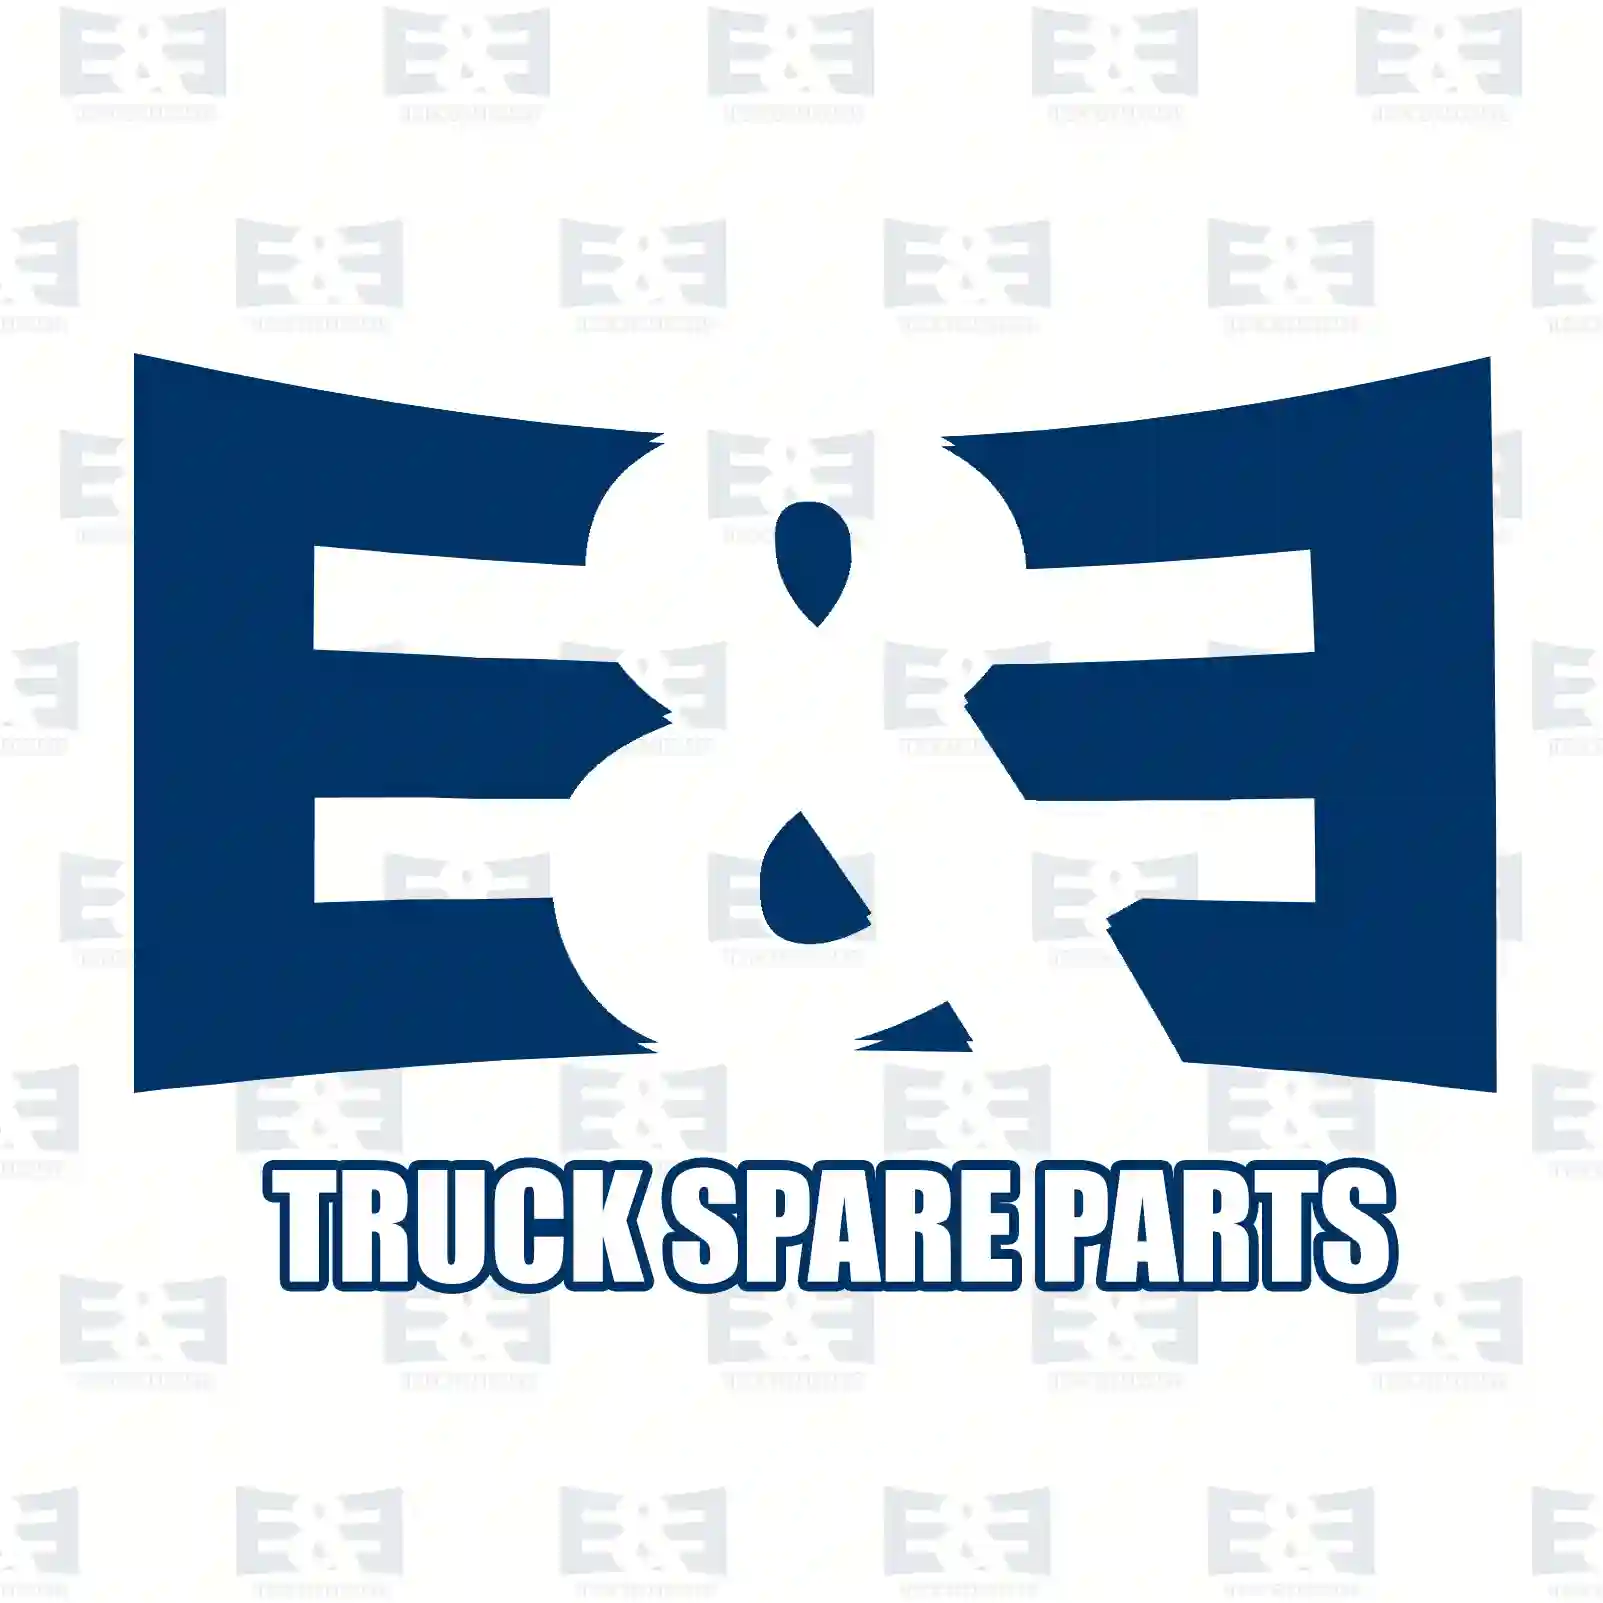 Water pump, 2E2203682, 5010553652, 7422485068, ZG00747-0008 ||  2E2203682 E&E Truck Spare Parts | Truck Spare Parts, Auotomotive Spare Parts Water pump, 2E2203682, 5010553652, 7422485068, ZG00747-0008 ||  2E2203682 E&E Truck Spare Parts | Truck Spare Parts, Auotomotive Spare Parts